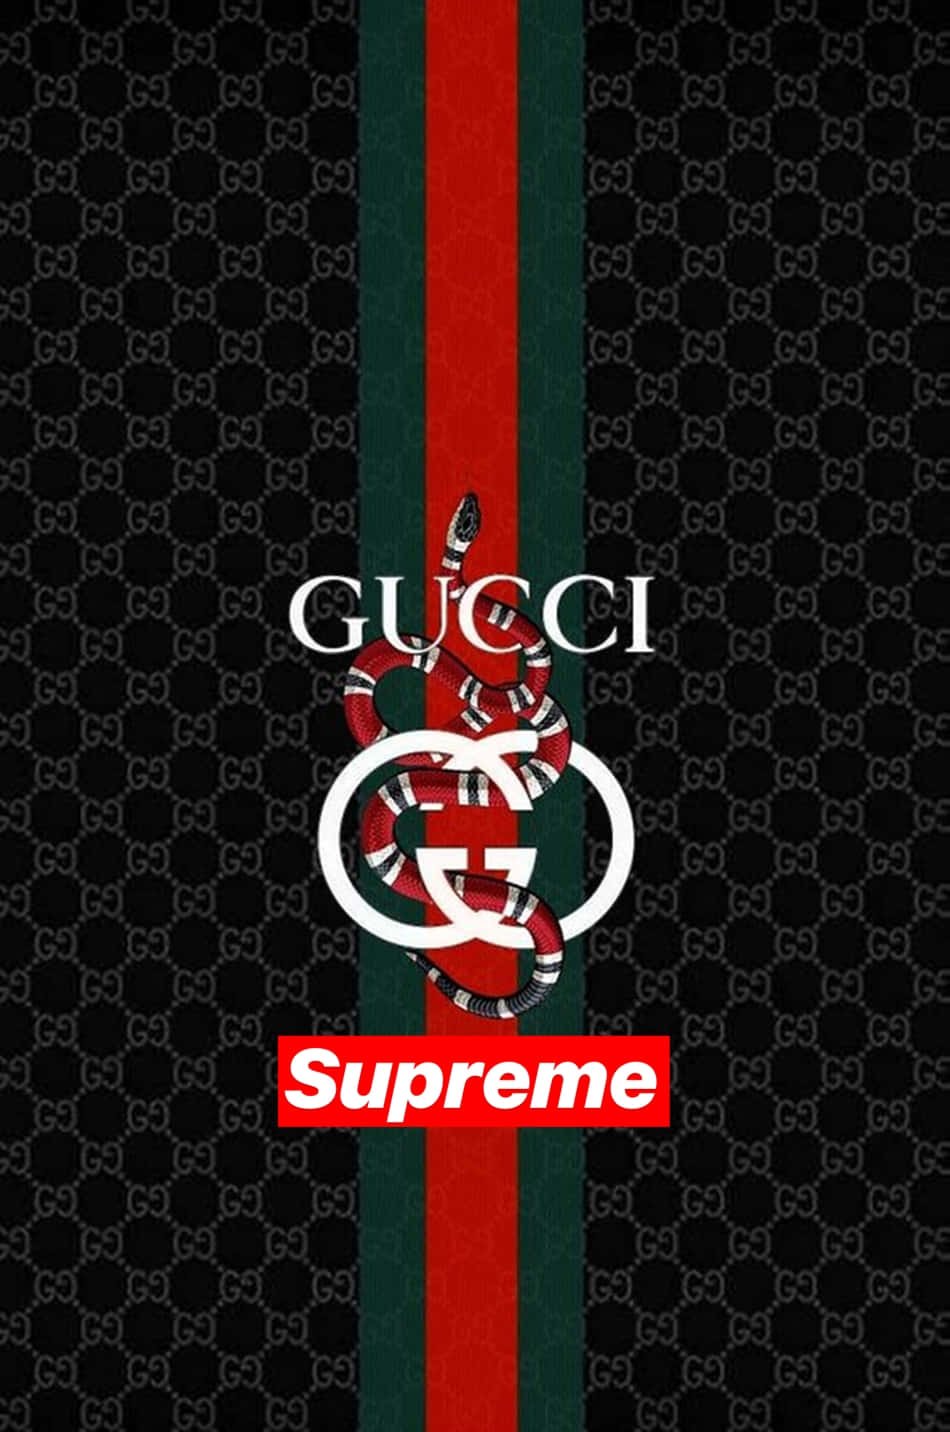 Gucci Supreme Wallpaper - Wallpaper Sun